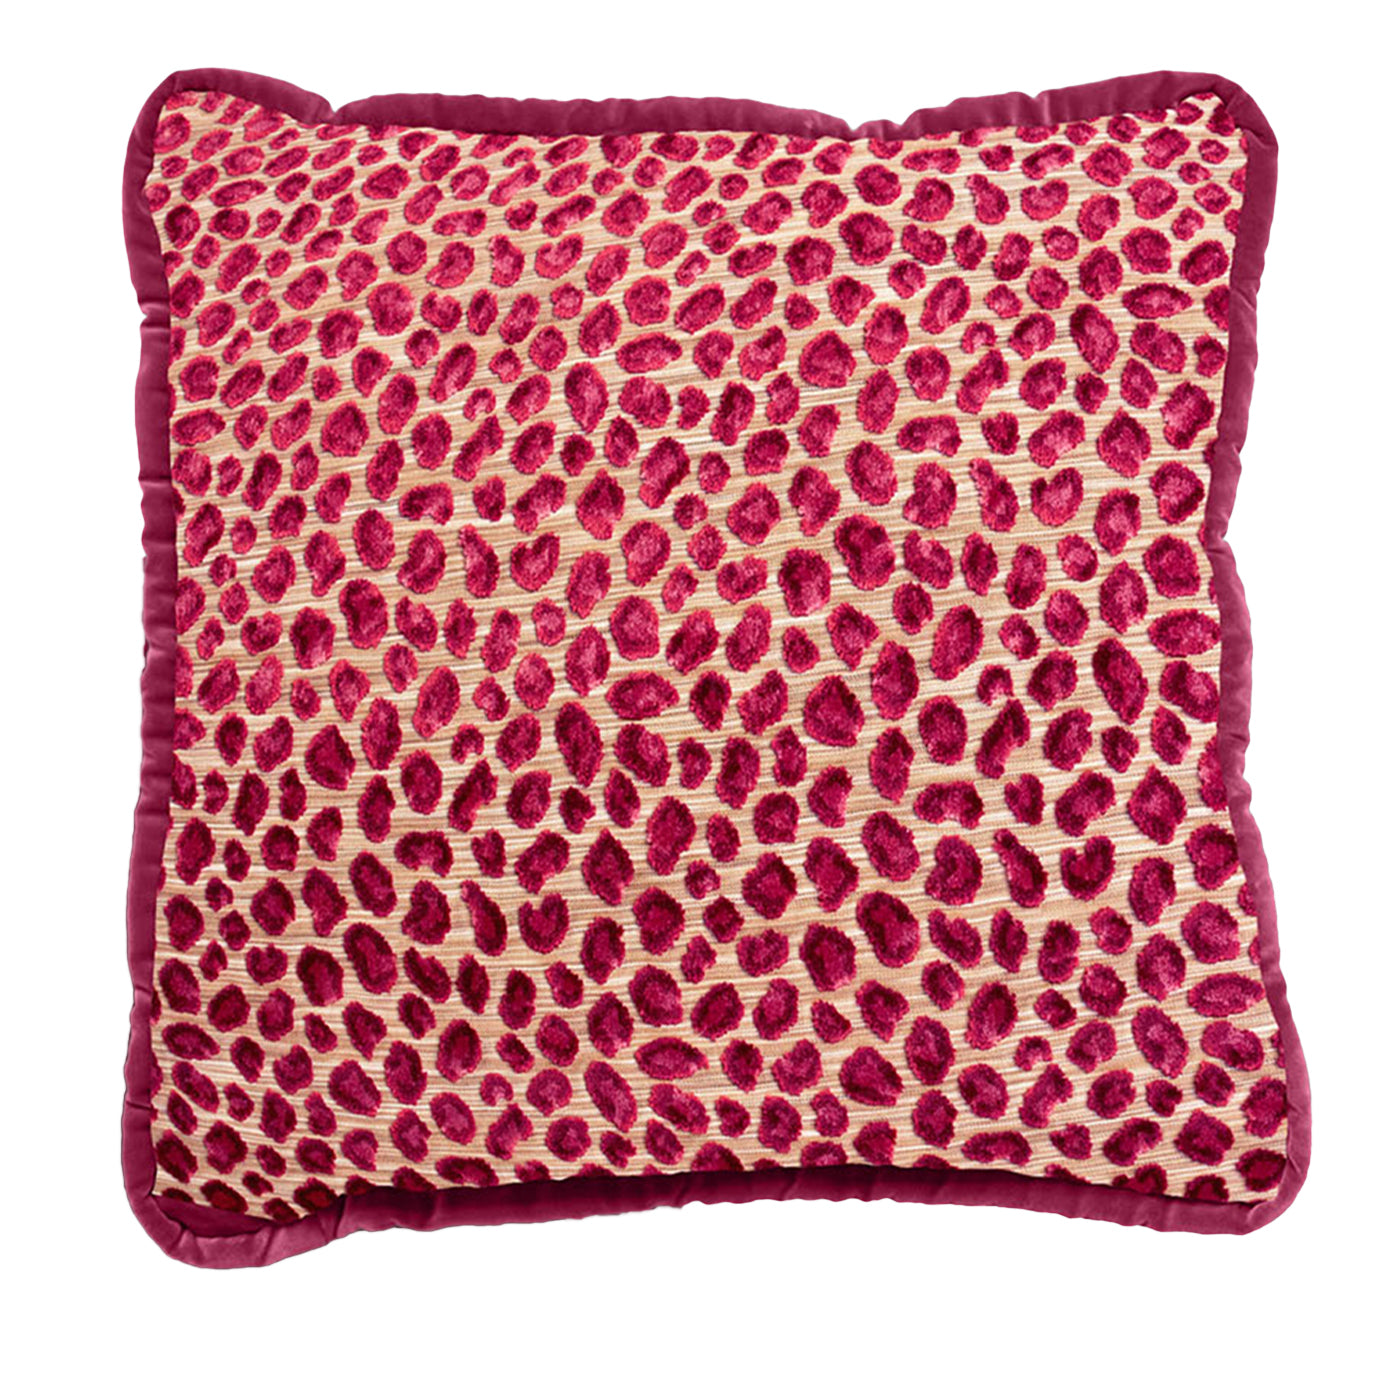 Cuscino reversibile in velluto Couture rosso e leopardo Glam - Vista principale